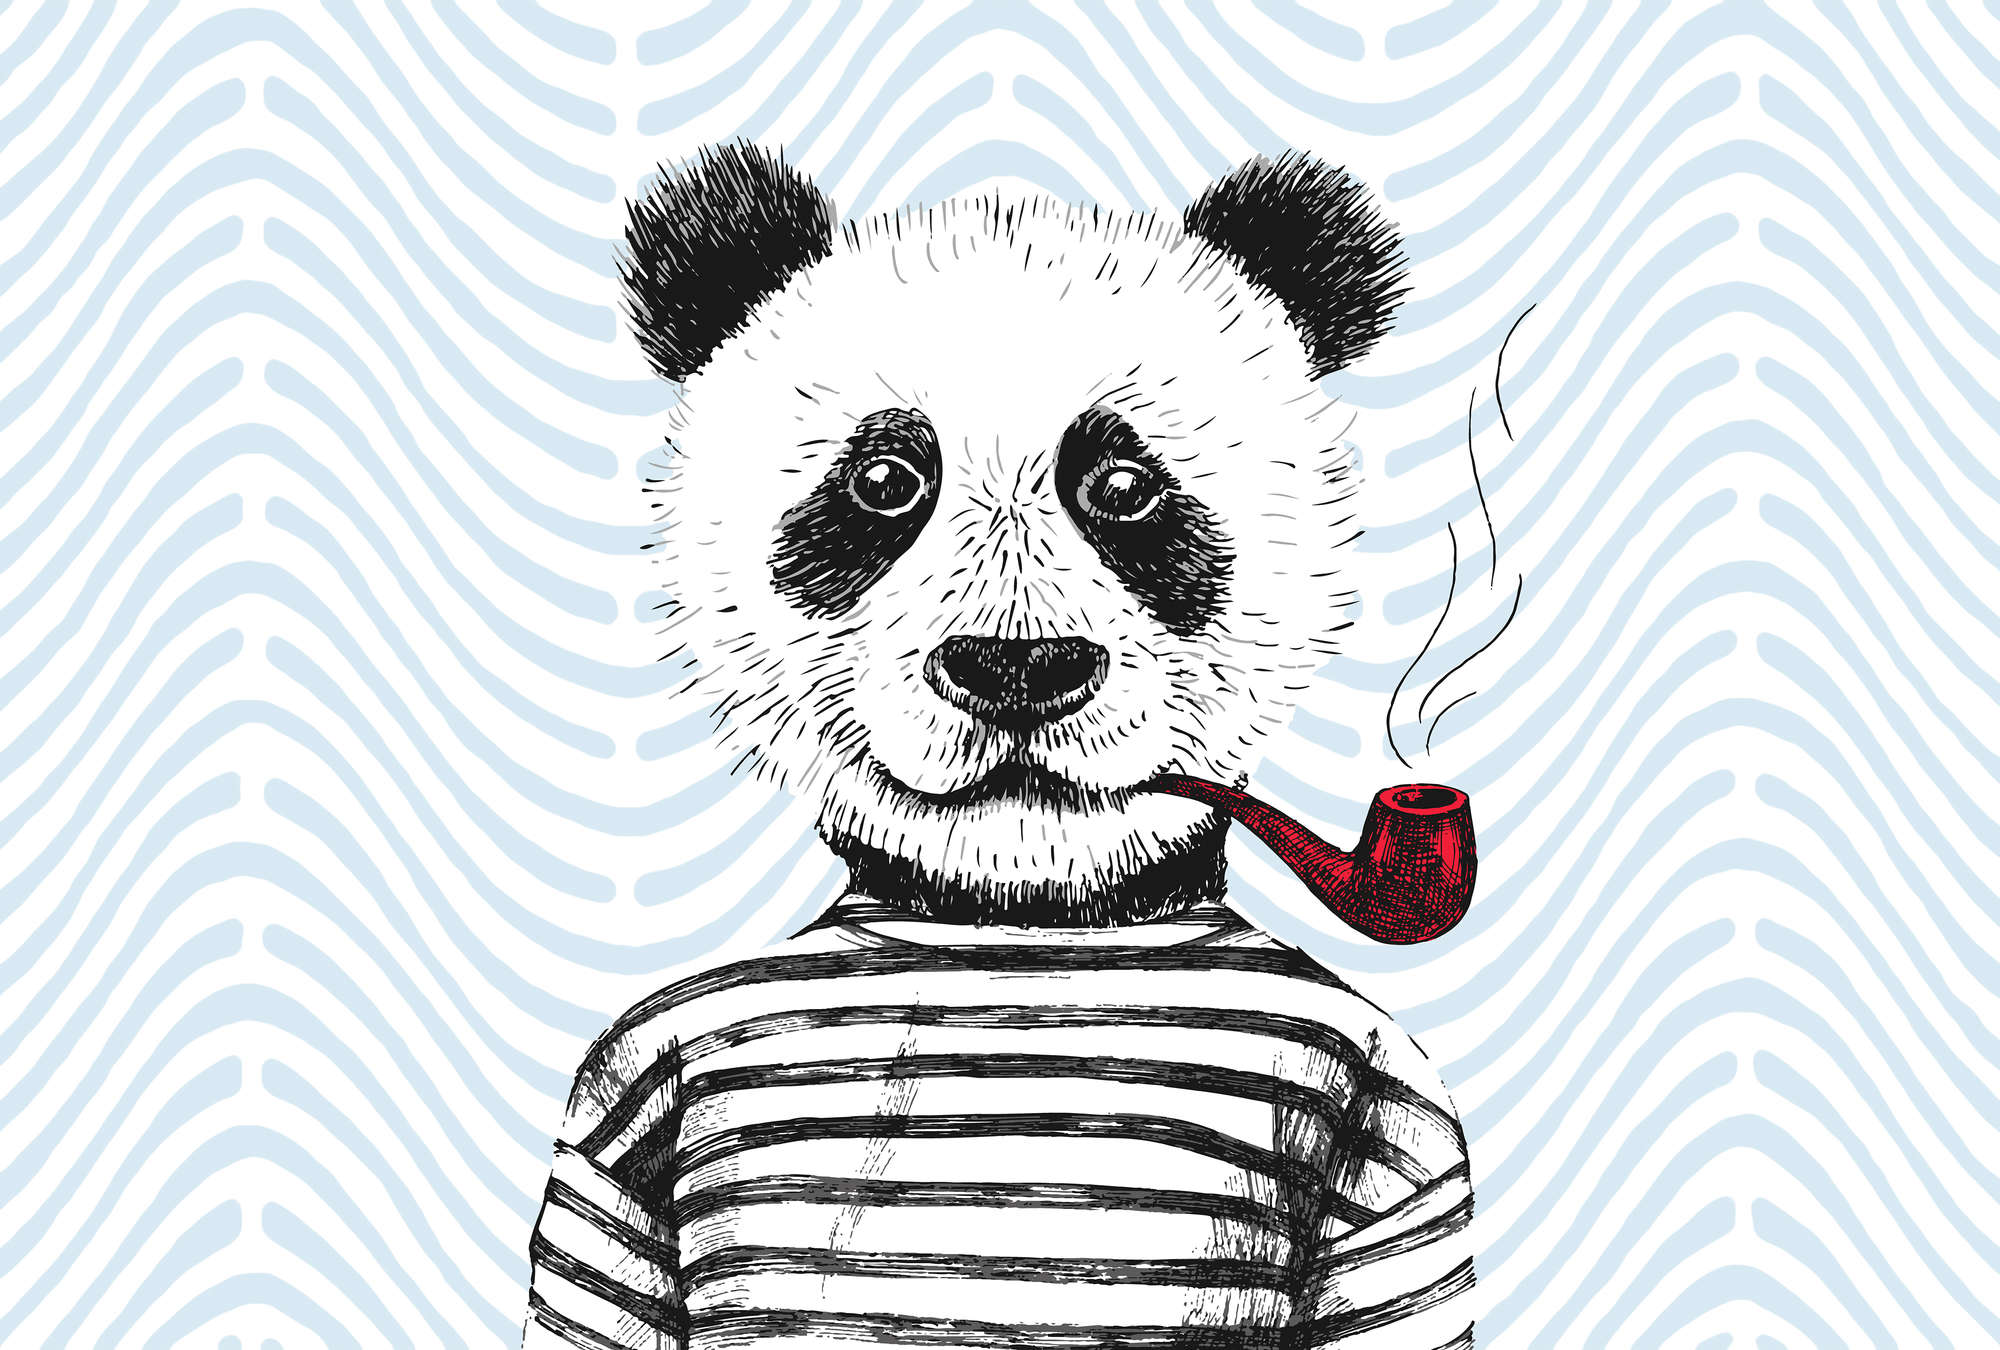             Muurschildering komisch ontwerp voor kinderkamer panda motief - blauw, rood, wit
        